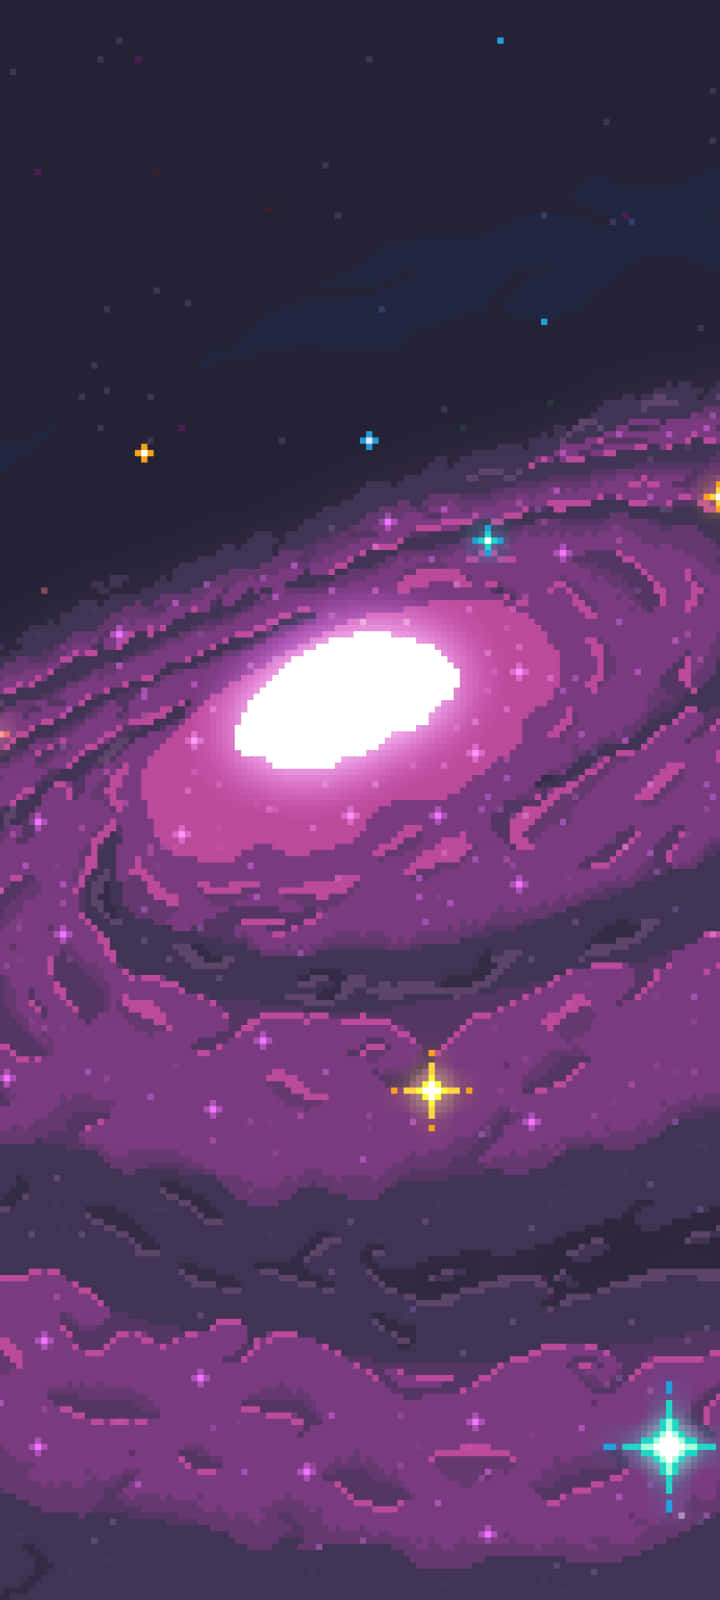 Pixelgalaxien - Pixelgalaxi kunst Wallpaper